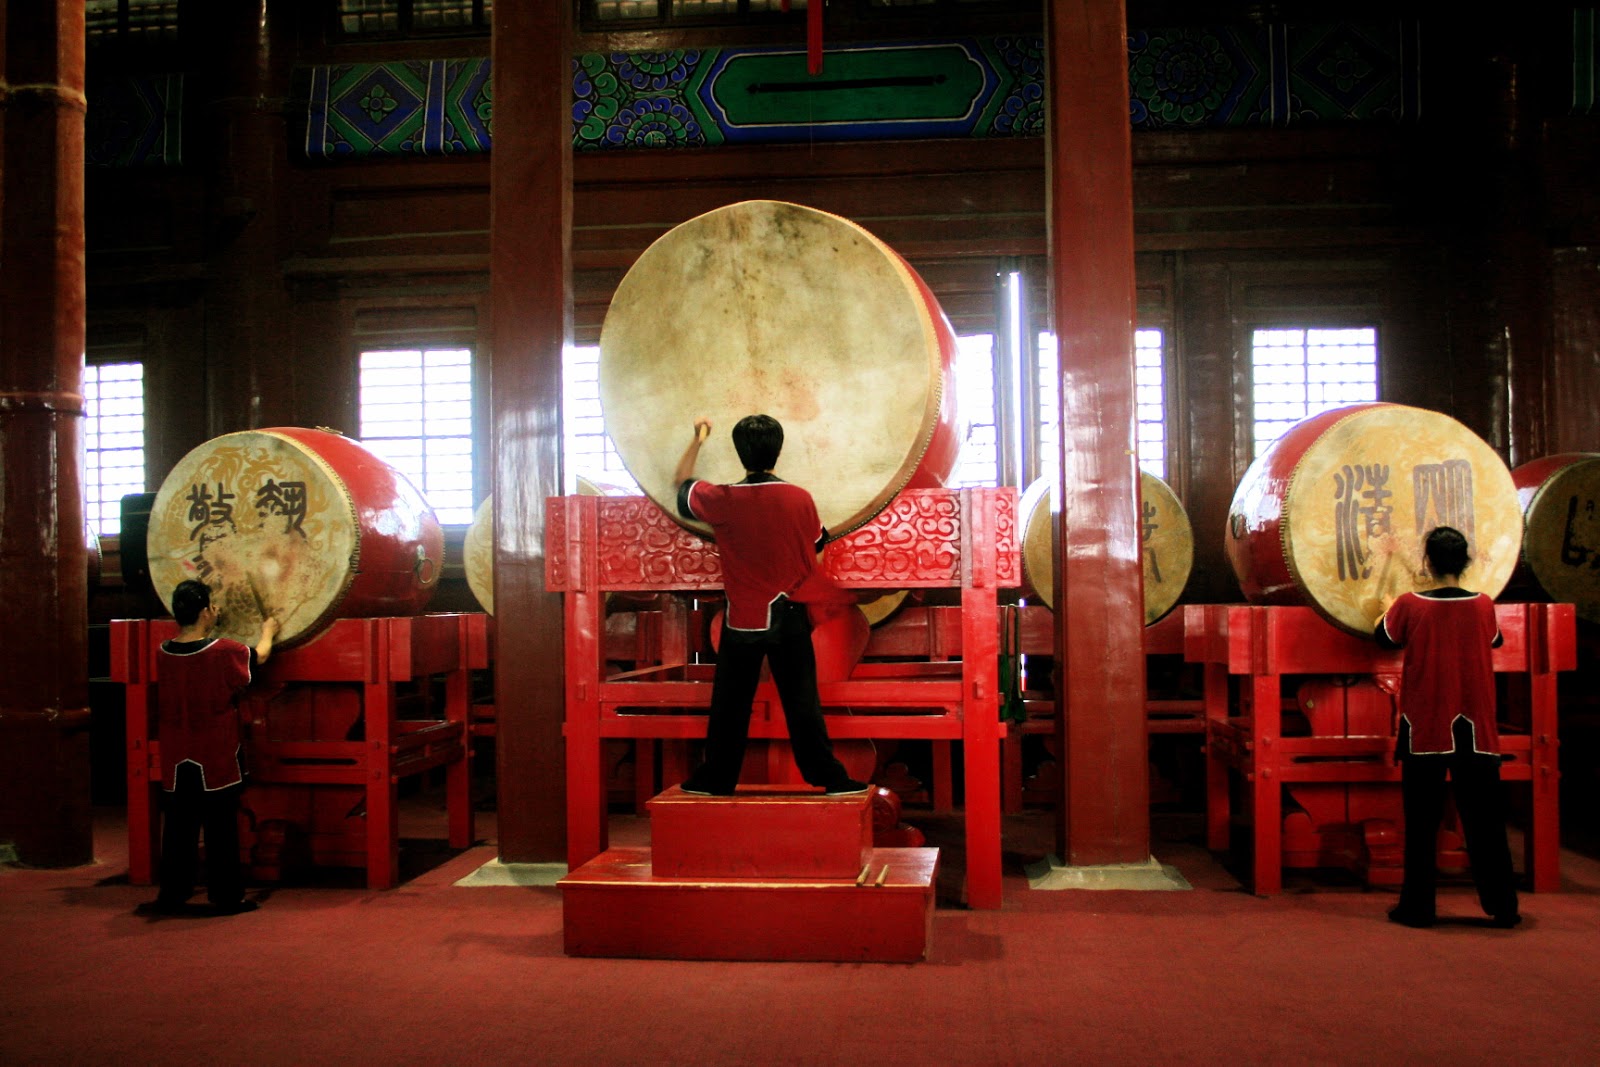 Tambores chineses, em um ambiente em tons vermelhos, tocados por três pessoas ilustra este post sobre o Shijing, o Livro das Canções.